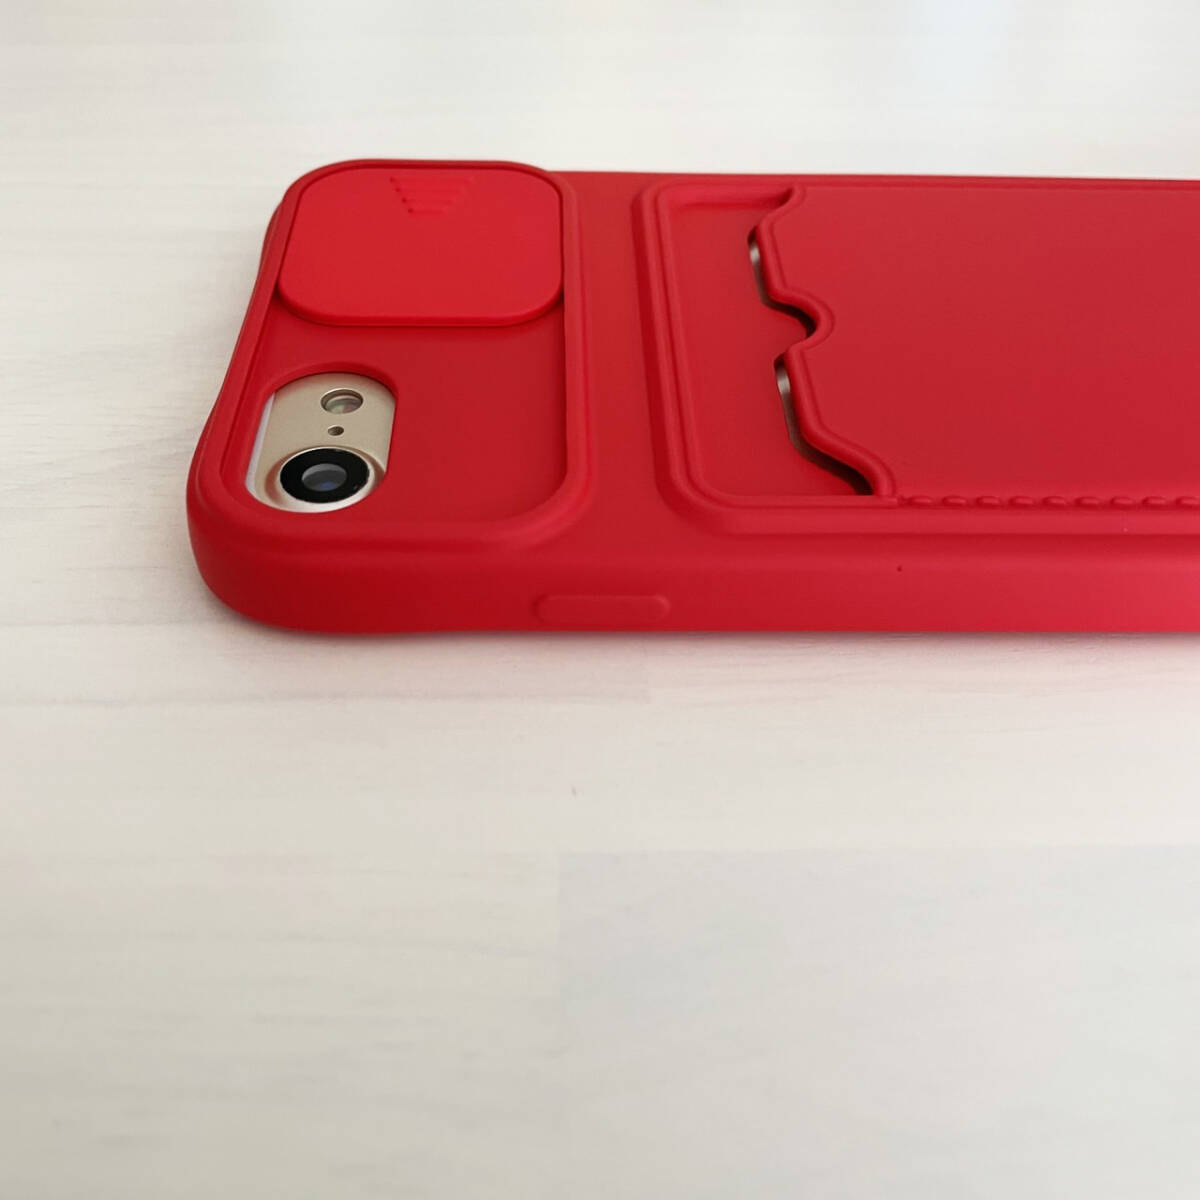 訳あり iPhone 6 6s 7 8 SE (第2世代/第3世代) SE2 SE3 ケース シリコン スマホ ショルダー 肩掛け 紐付き 収納 レッド 赤色 アイフォン